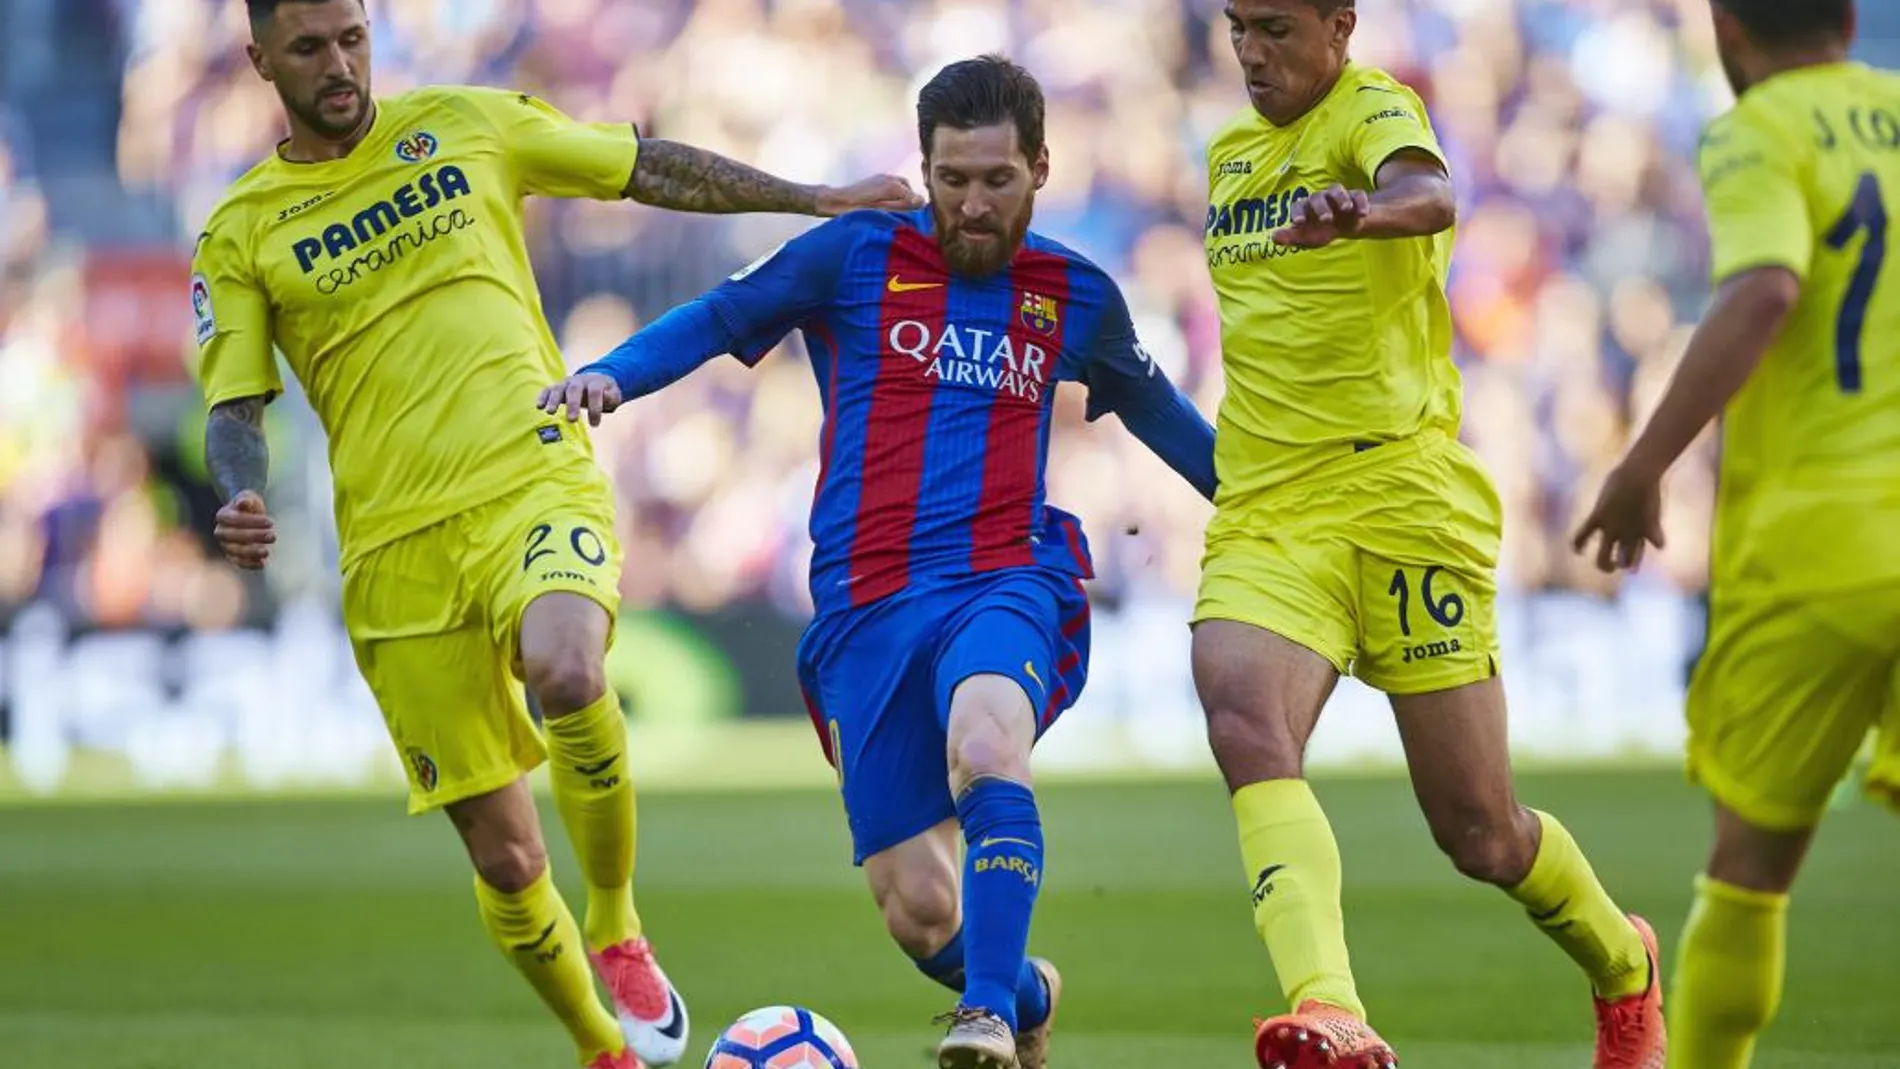 El delantero argentino del FC Barcelona Lionel Andrés Messi con el balón ante los jugadores del Villareal, el italiano RobertoSoriano y Rodrigo Hernández Cascante